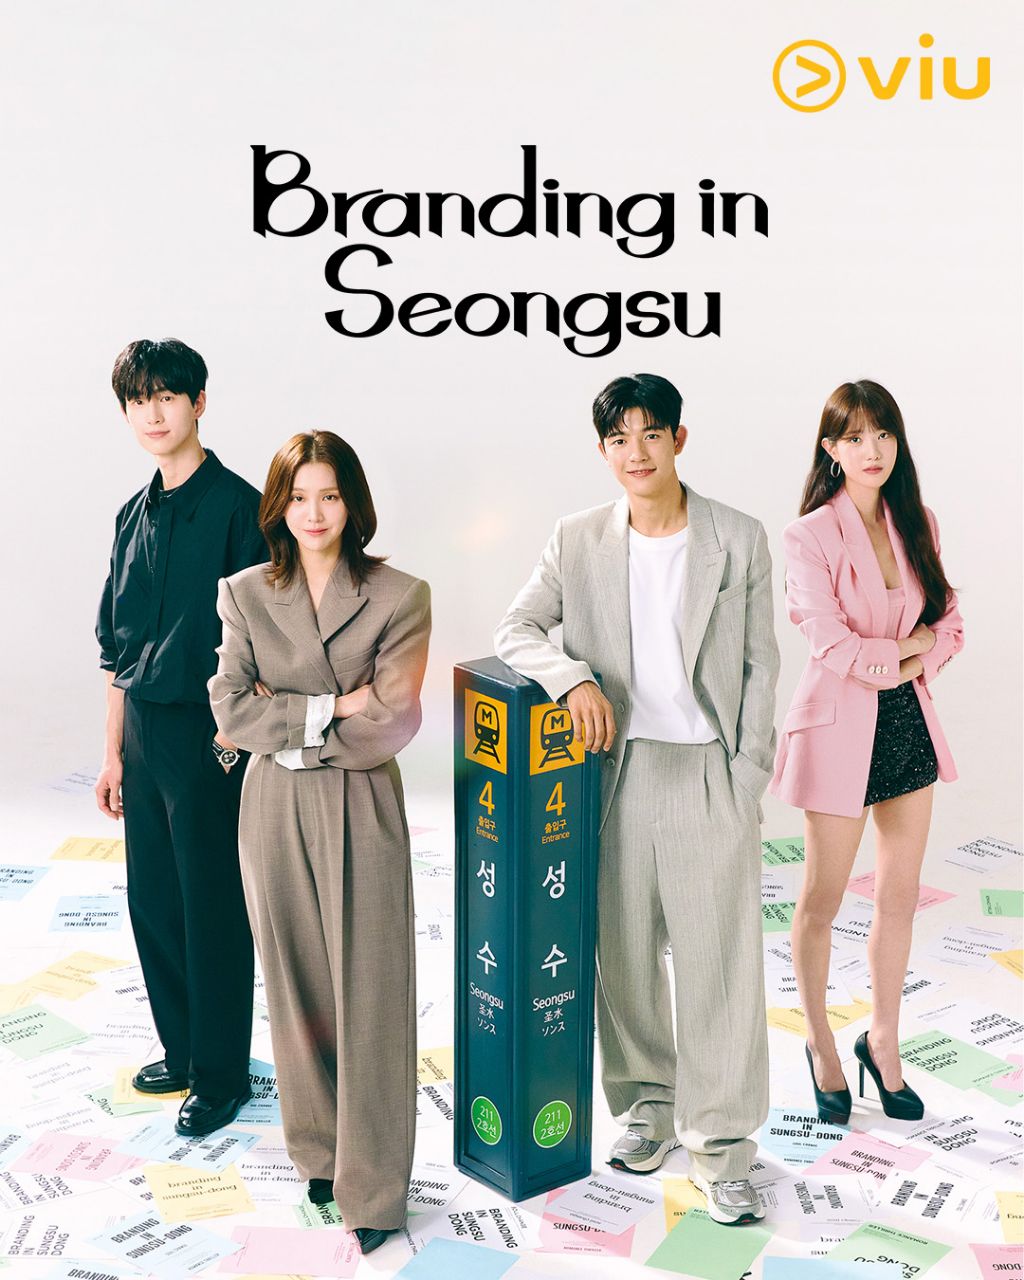 مسلسل العلامة التجارية في سيونغسو Branding in Seongsu الحلقة 21